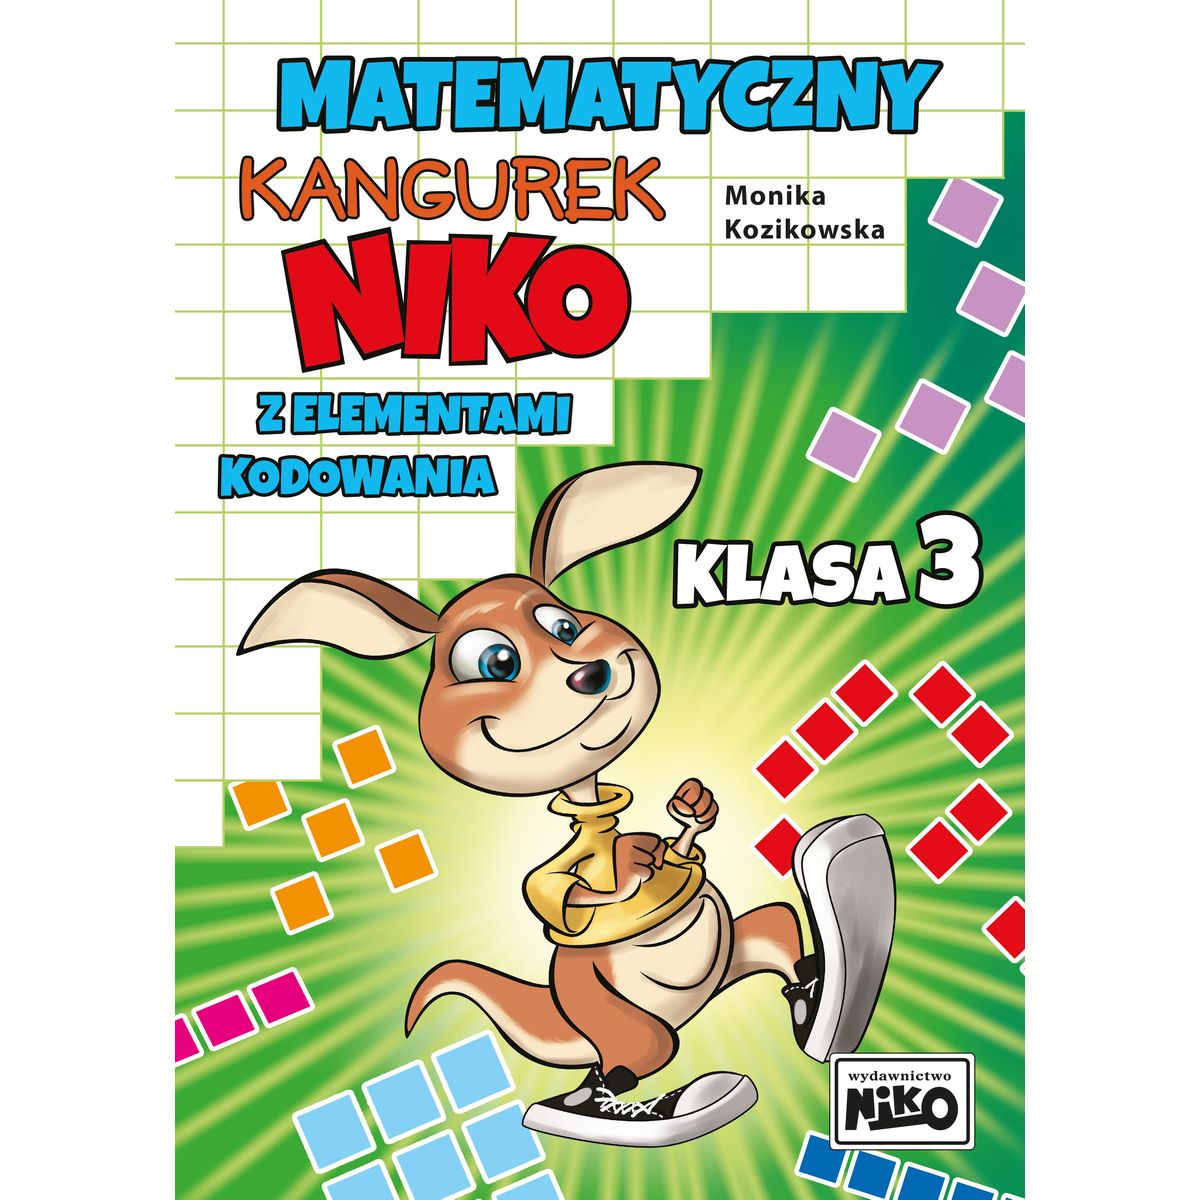 Książeczka edukacyjna Matematyczny kangurek Niko z elementami kodowania. Klasa 3 Niko